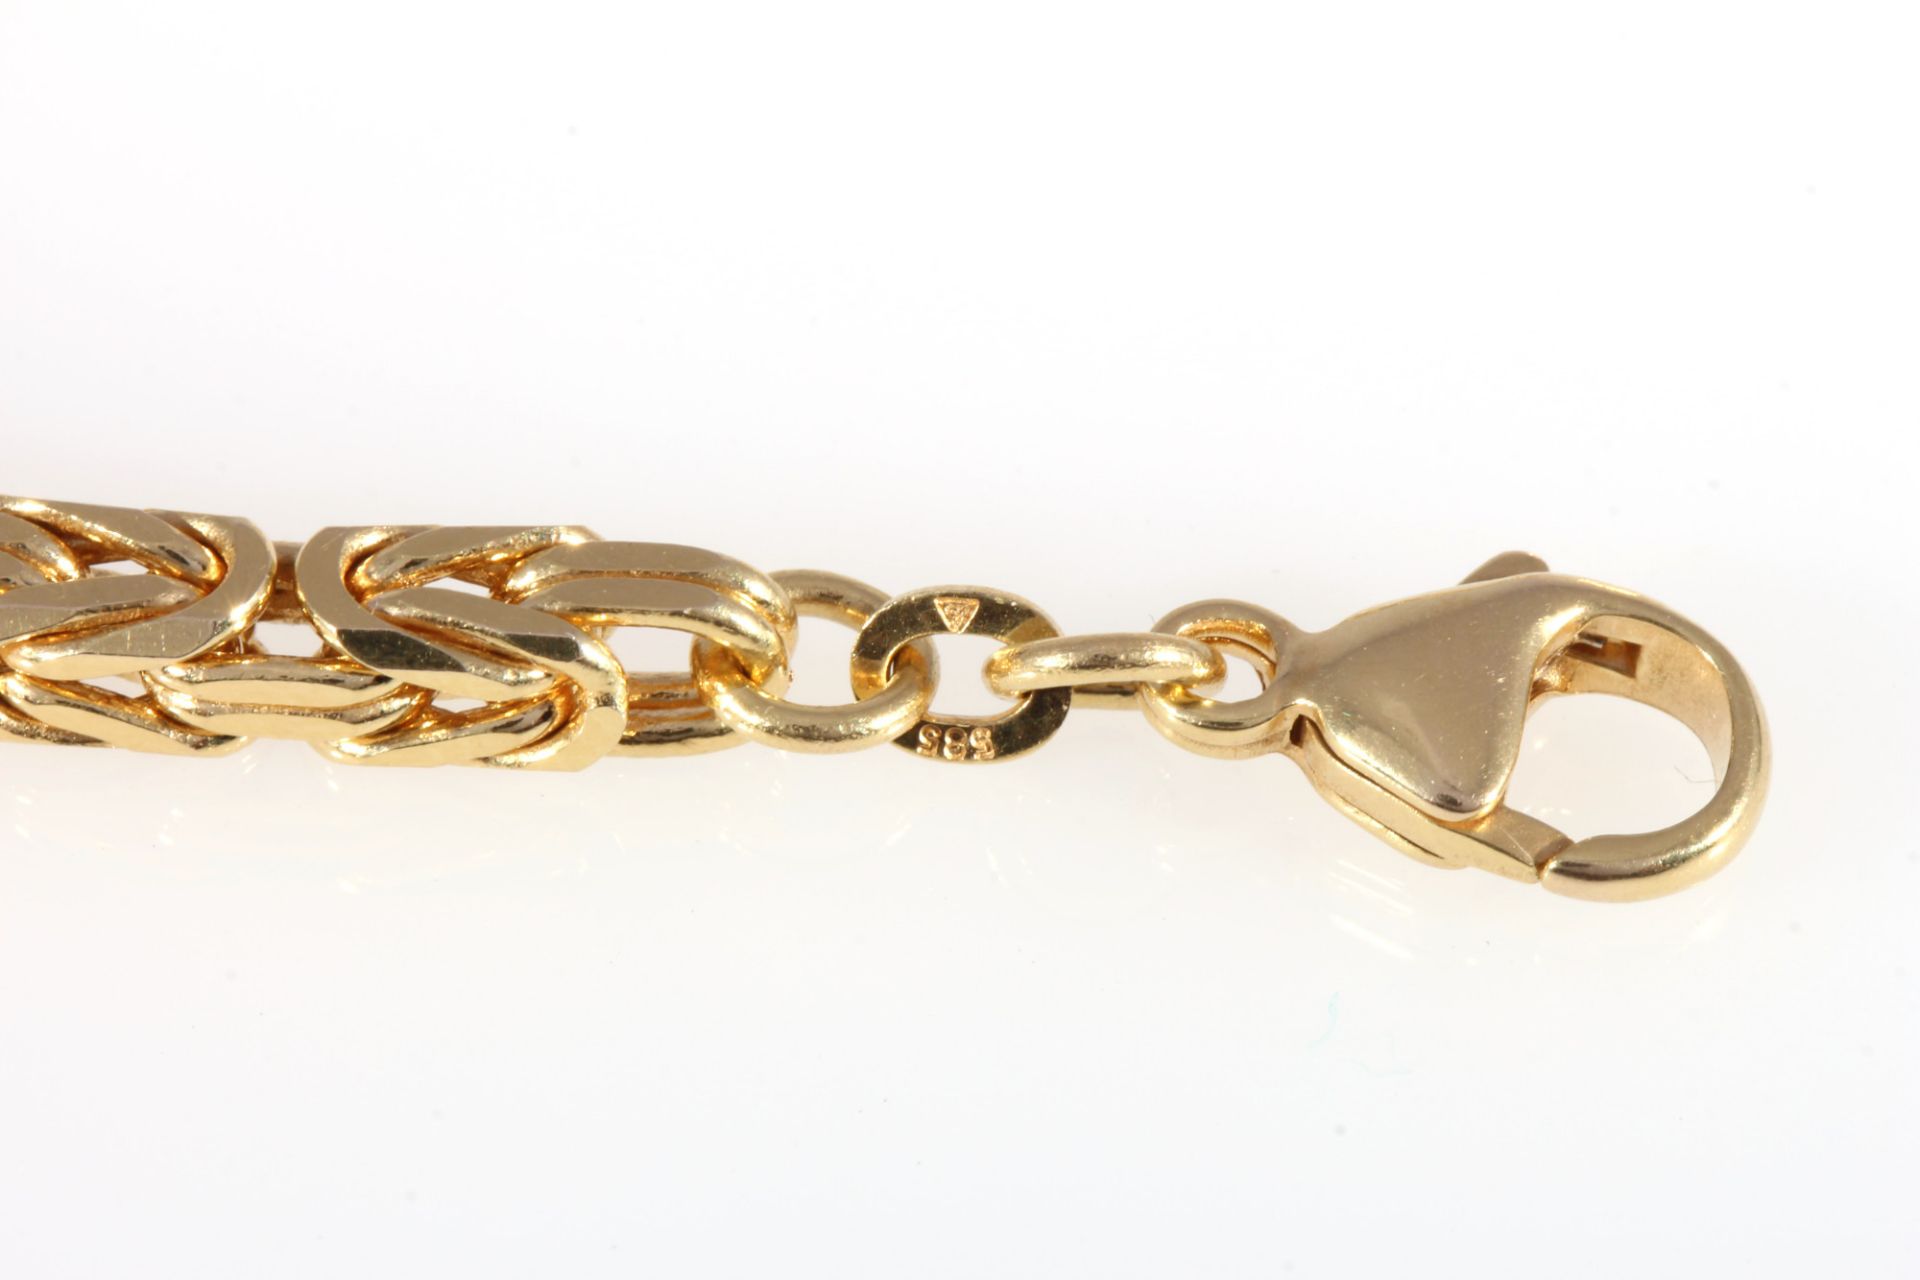 585 gold long king necklace, 14K Gold lange Königskette / Halskette, - Image 4 of 4